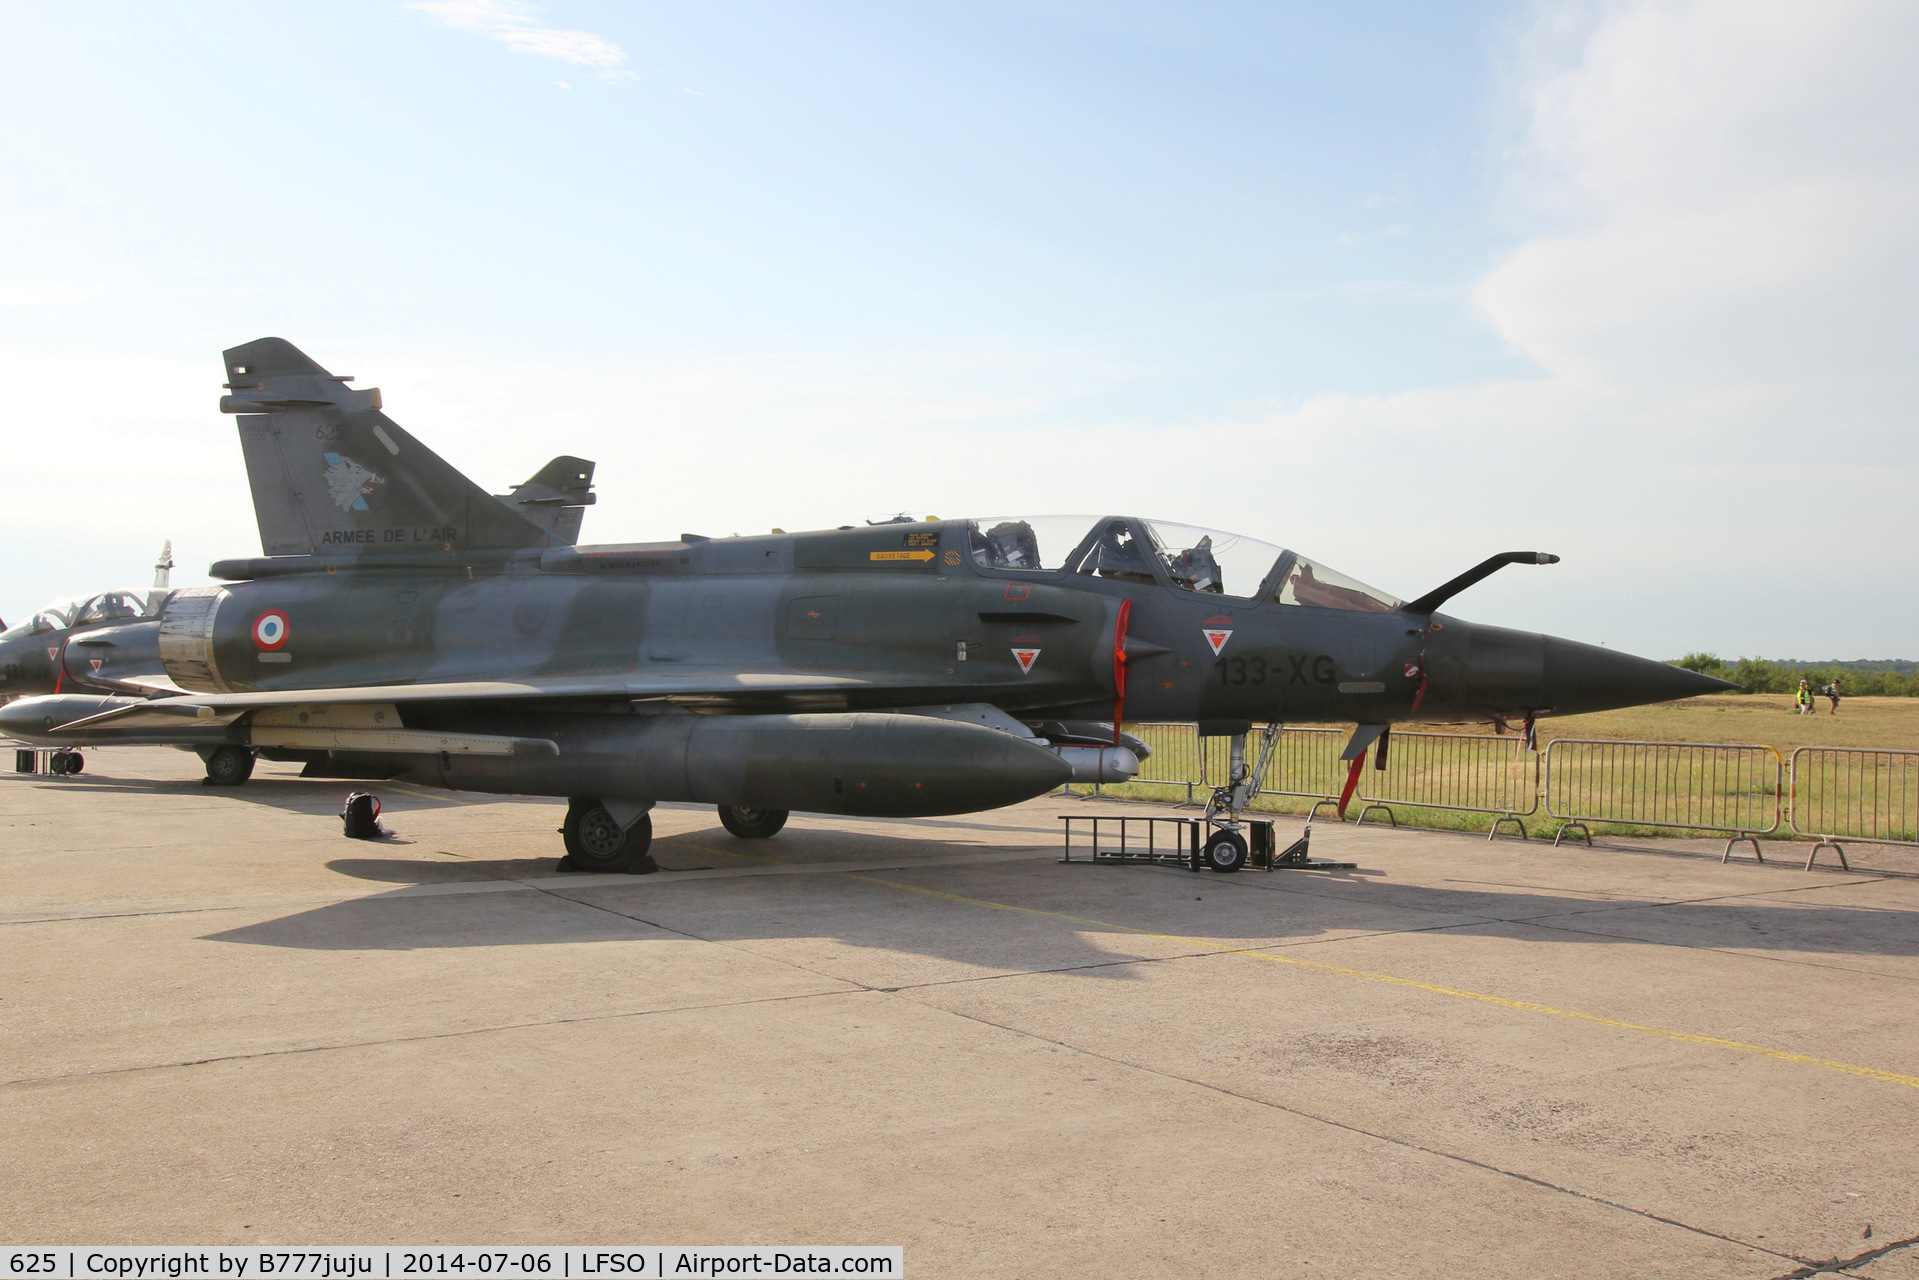 625, Dassault Mirage 2000D C/N 427, at Nancy-Ochey